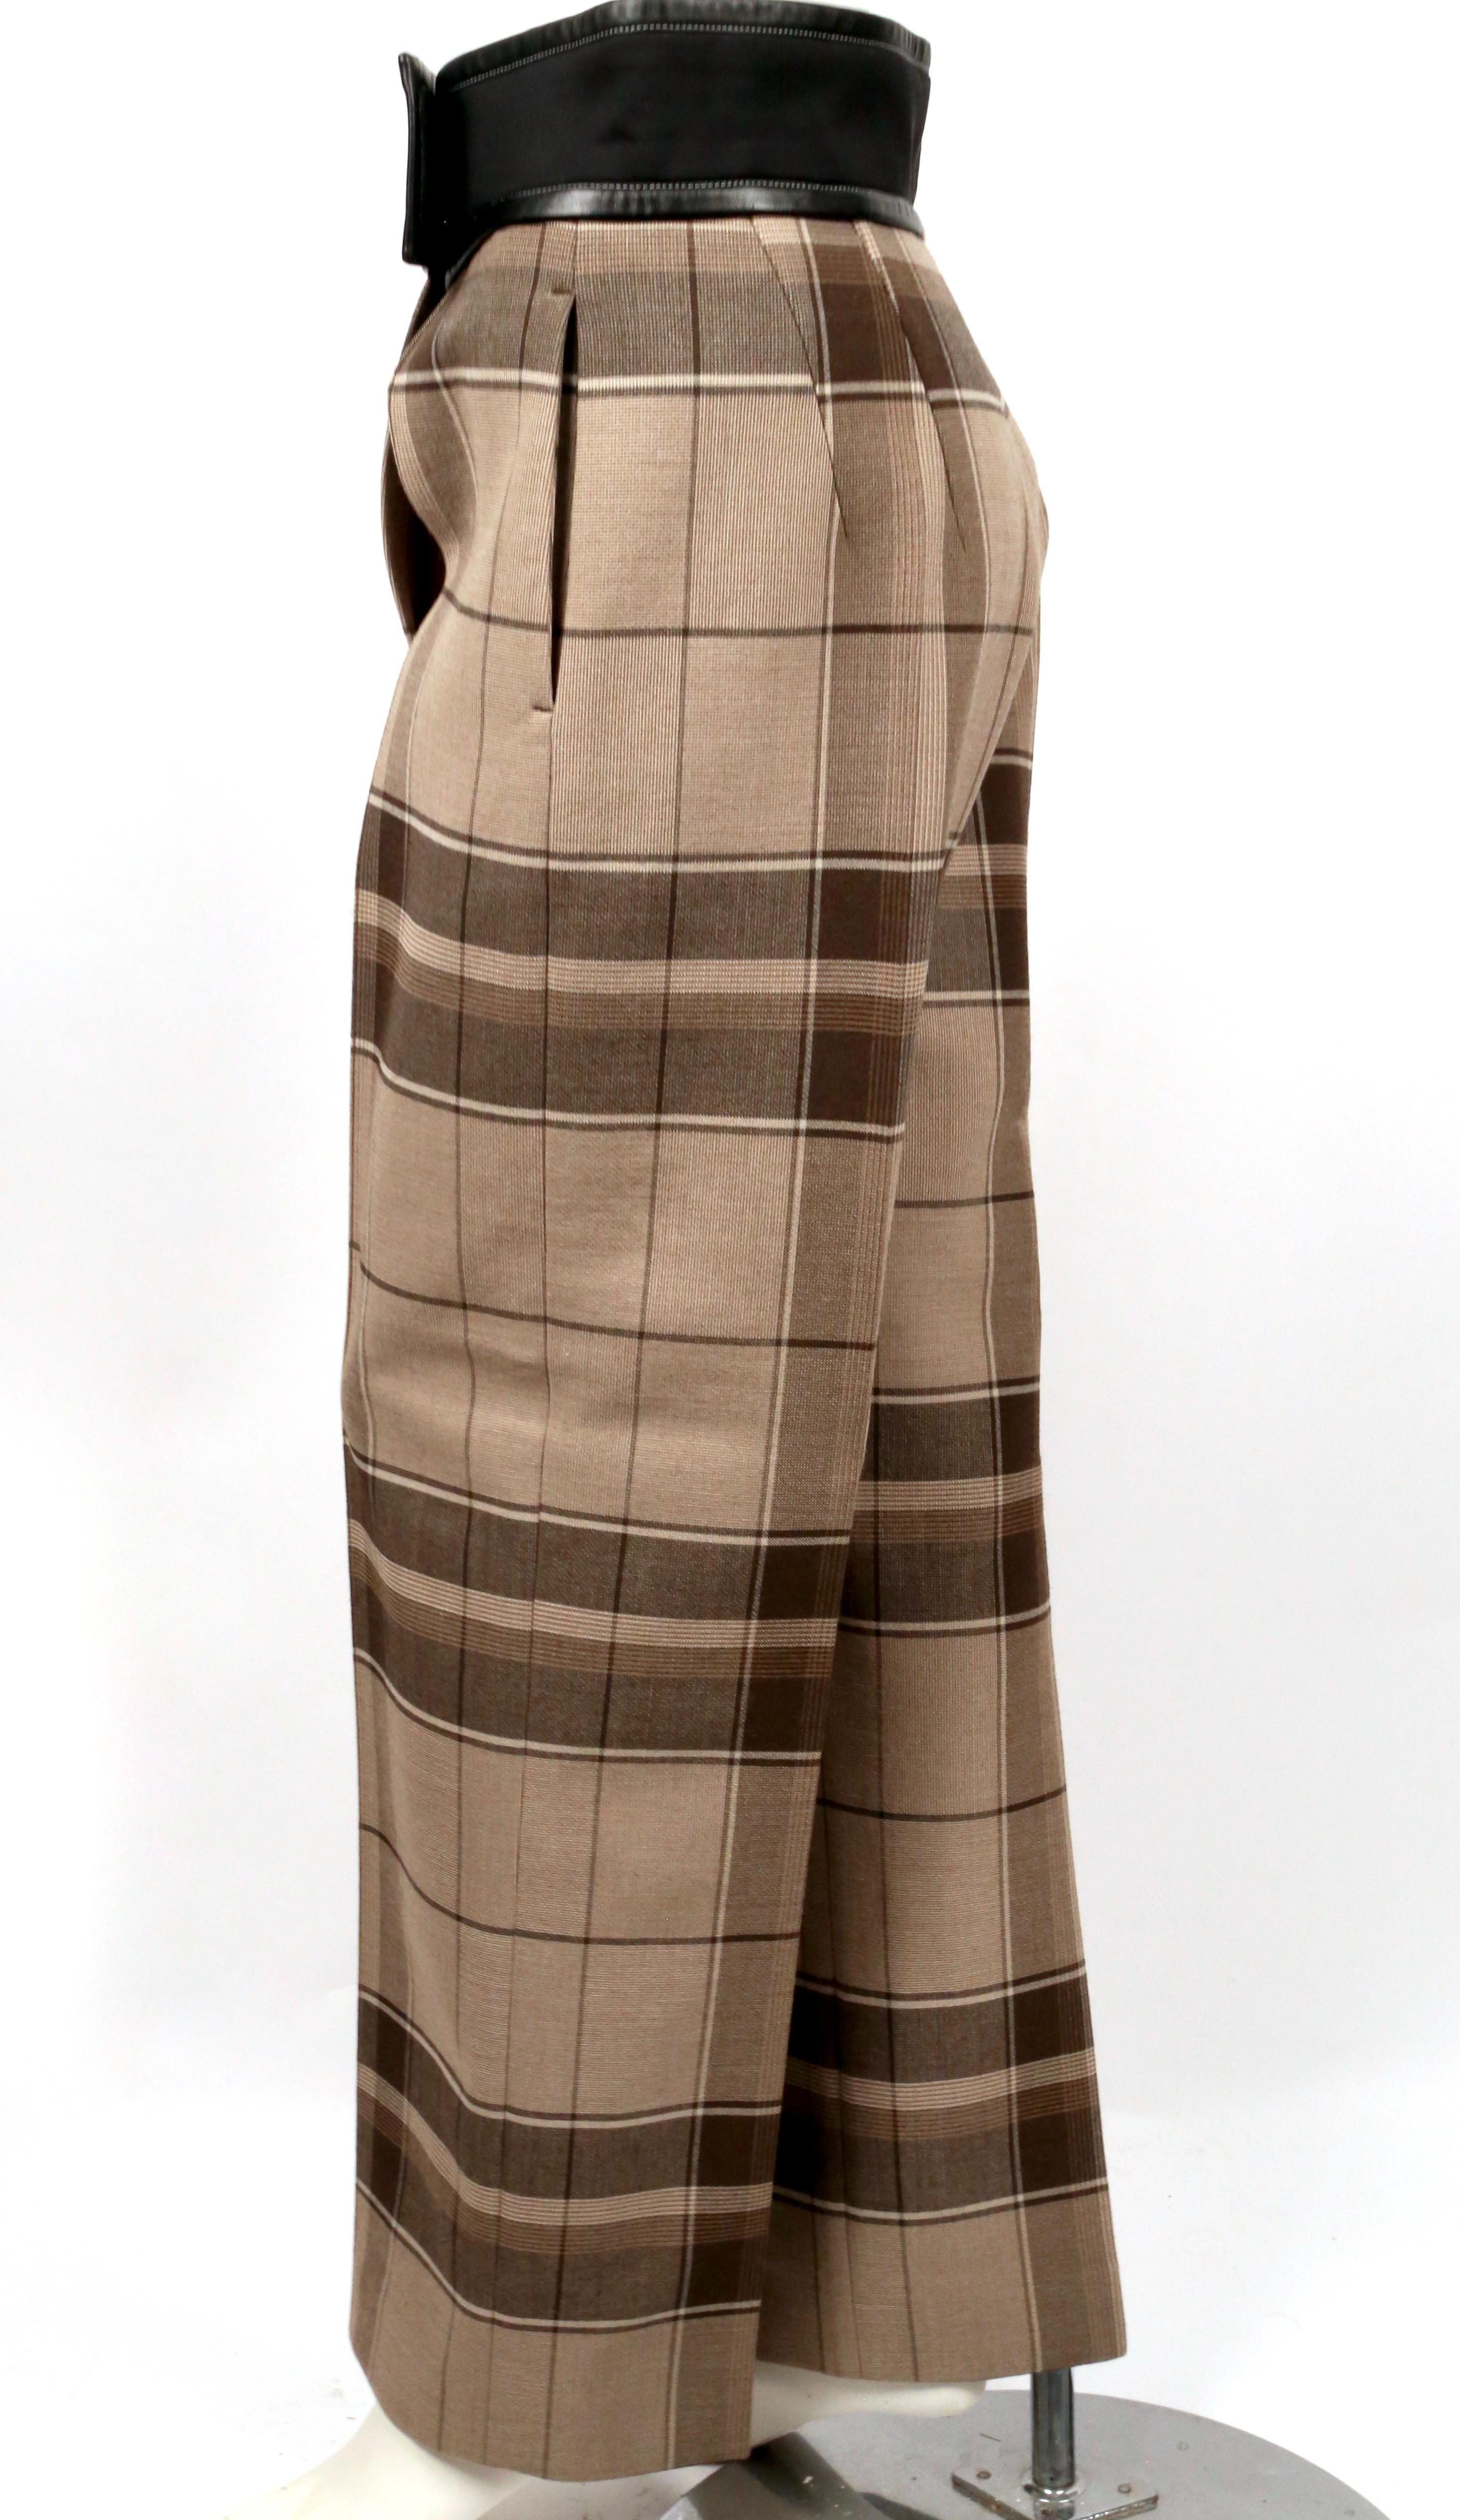 Pantalon oversize en laine écossaise avec ceinture enveloppante unique garnie de cuir, conçu par Phoebe Philo exactement comme vu sur le défilé du printemps 2016. Taille française 36. Mesures approximatives : taille 29-31